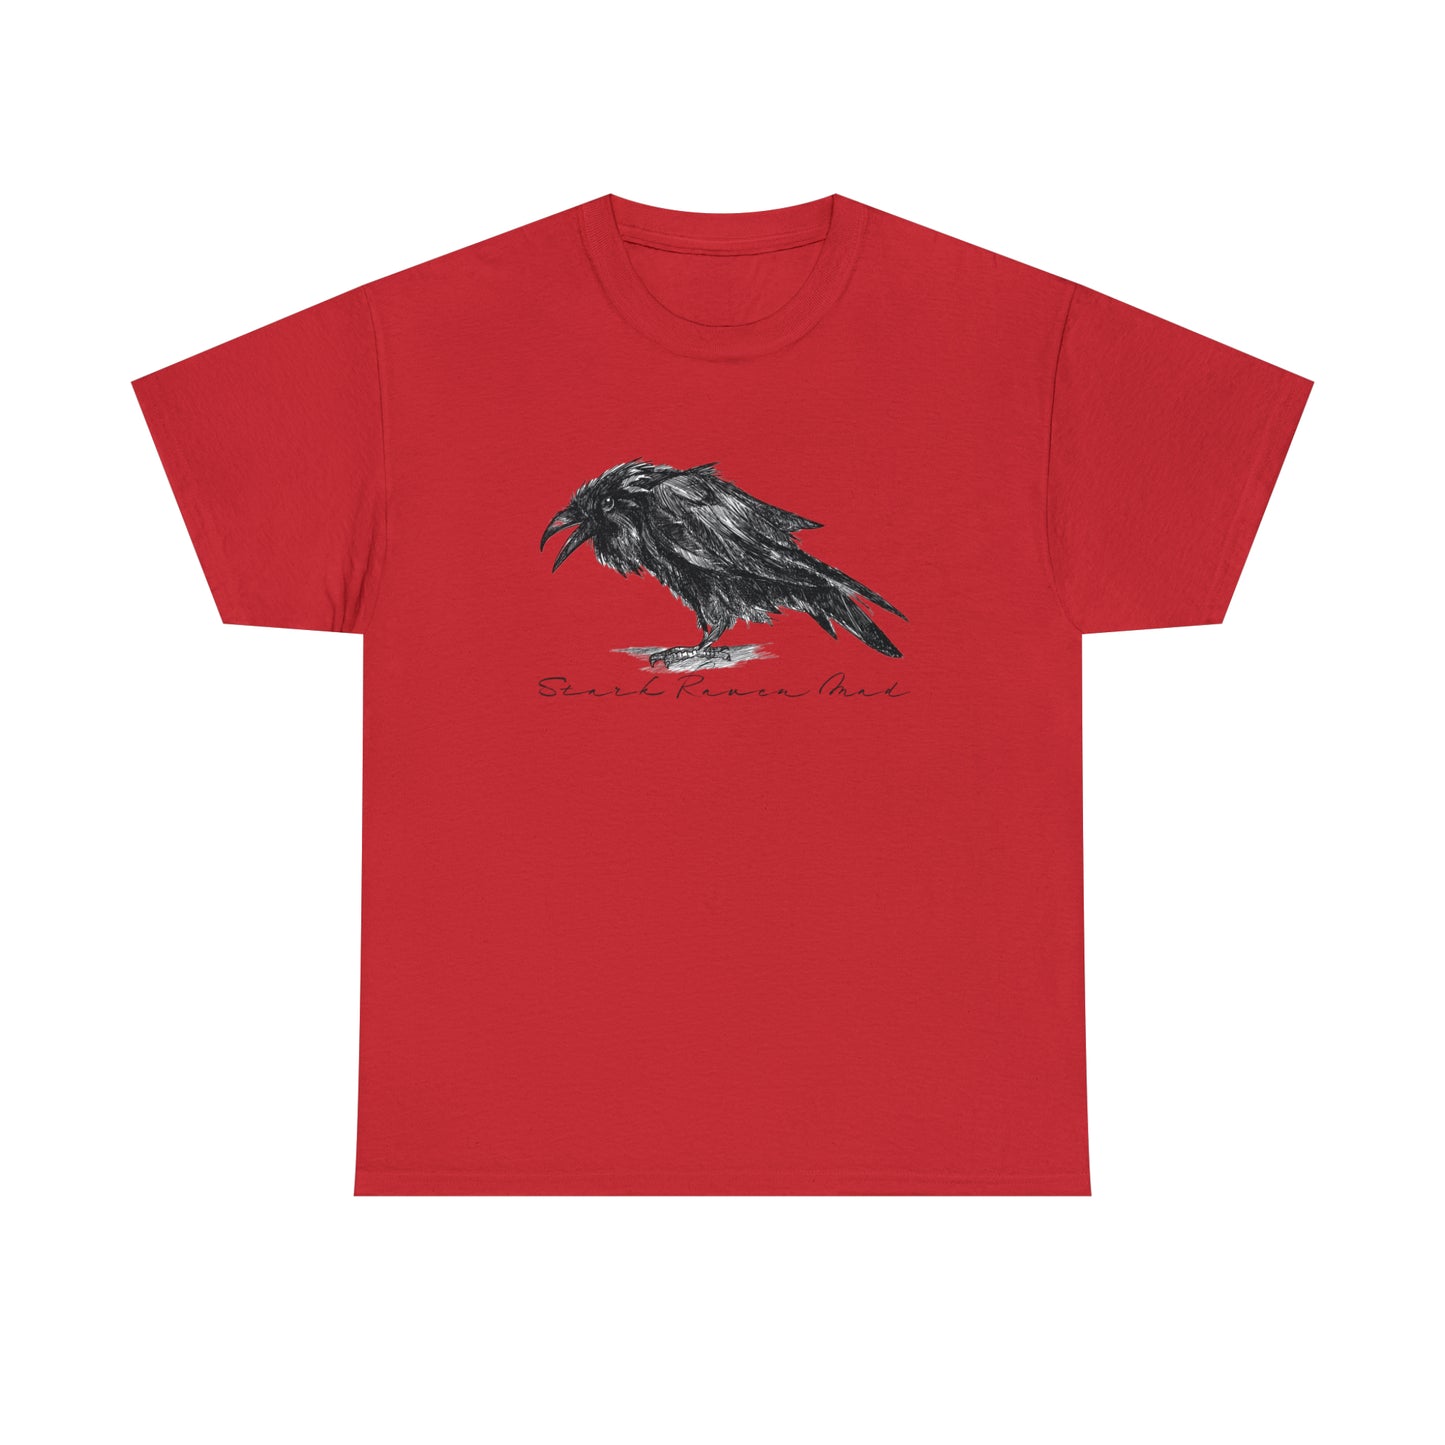 Raven T-Shirt For Edgar Allan Poe TShirt For Literary T Shirt For Scandinavian Shirt For Odin TShirt For Norse God Tee